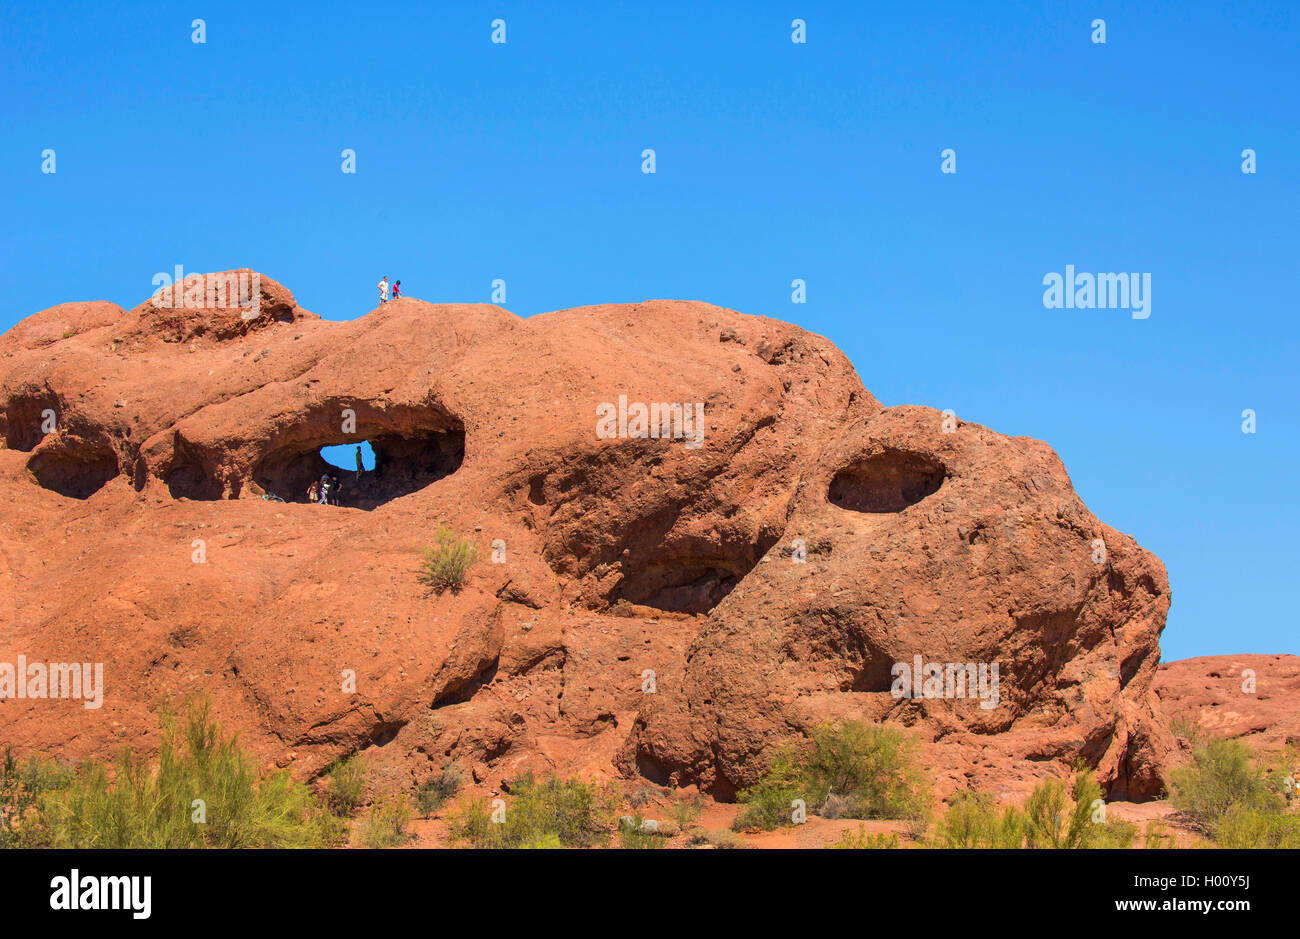 Agujero-en-el-Rock, cueva de la piedra arenisca roja con la escalada de los turistas, ESTADOS UNIDOS, Arizona, el parque Papago, Phoenix Foto de stock